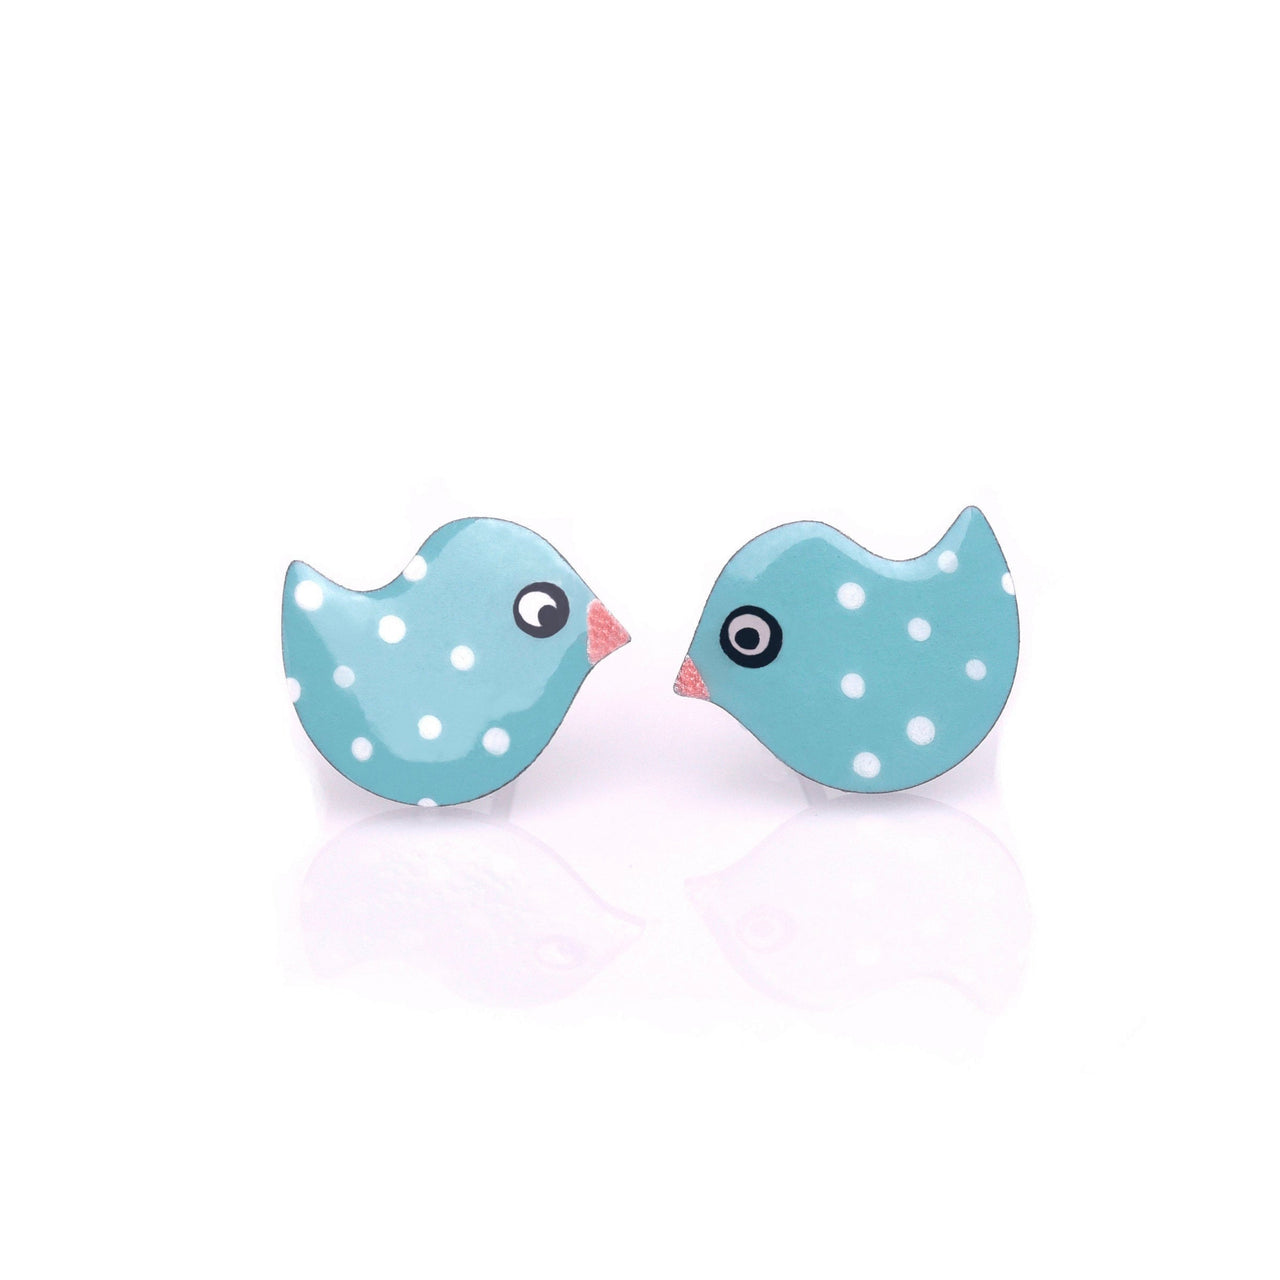 Retro Blue Bird Stud Earrings